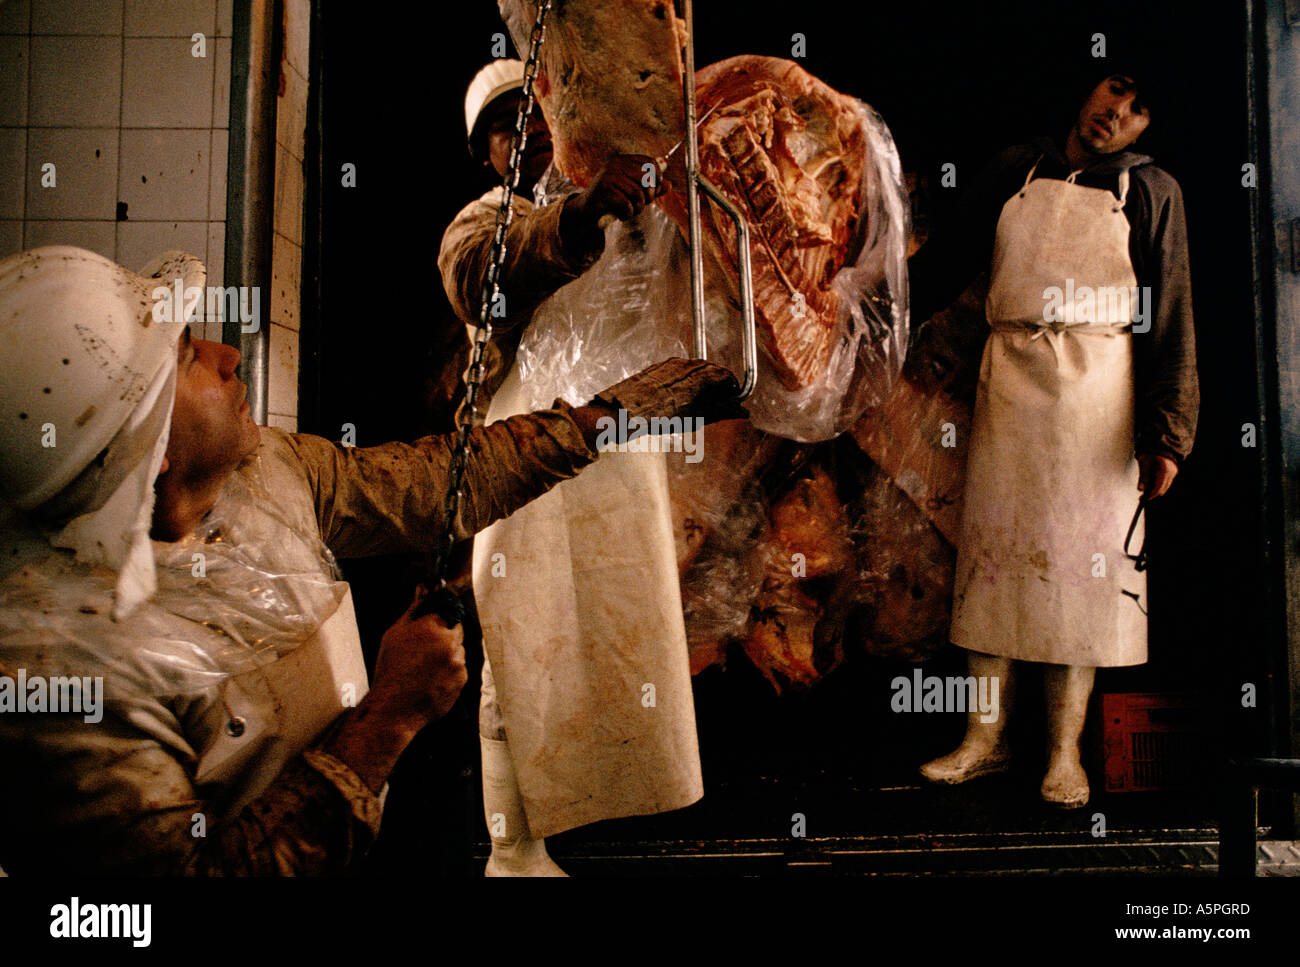 HALBE Seiten von Rindfleisch sind genommen aus der Schlachtung Haus zu einzelnen Metzgereien in BUENOS AIRES Argentinien Stockfoto